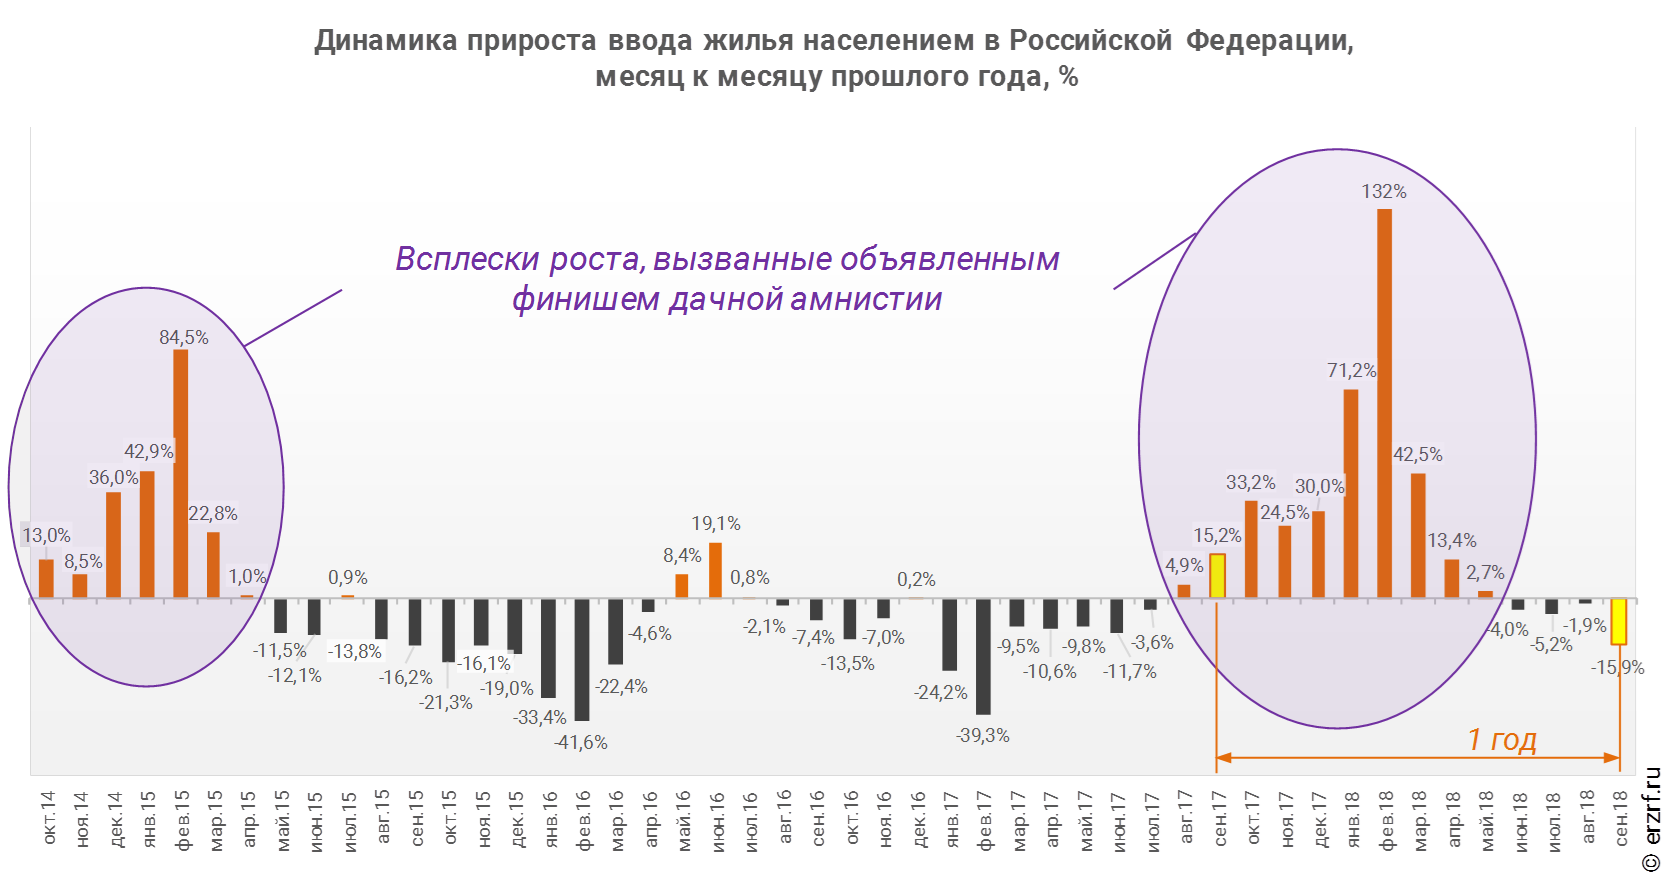 Динамика прироста ввода жилья населением в Российской Федерации,
 месяц к месяцу прошлого года, %
